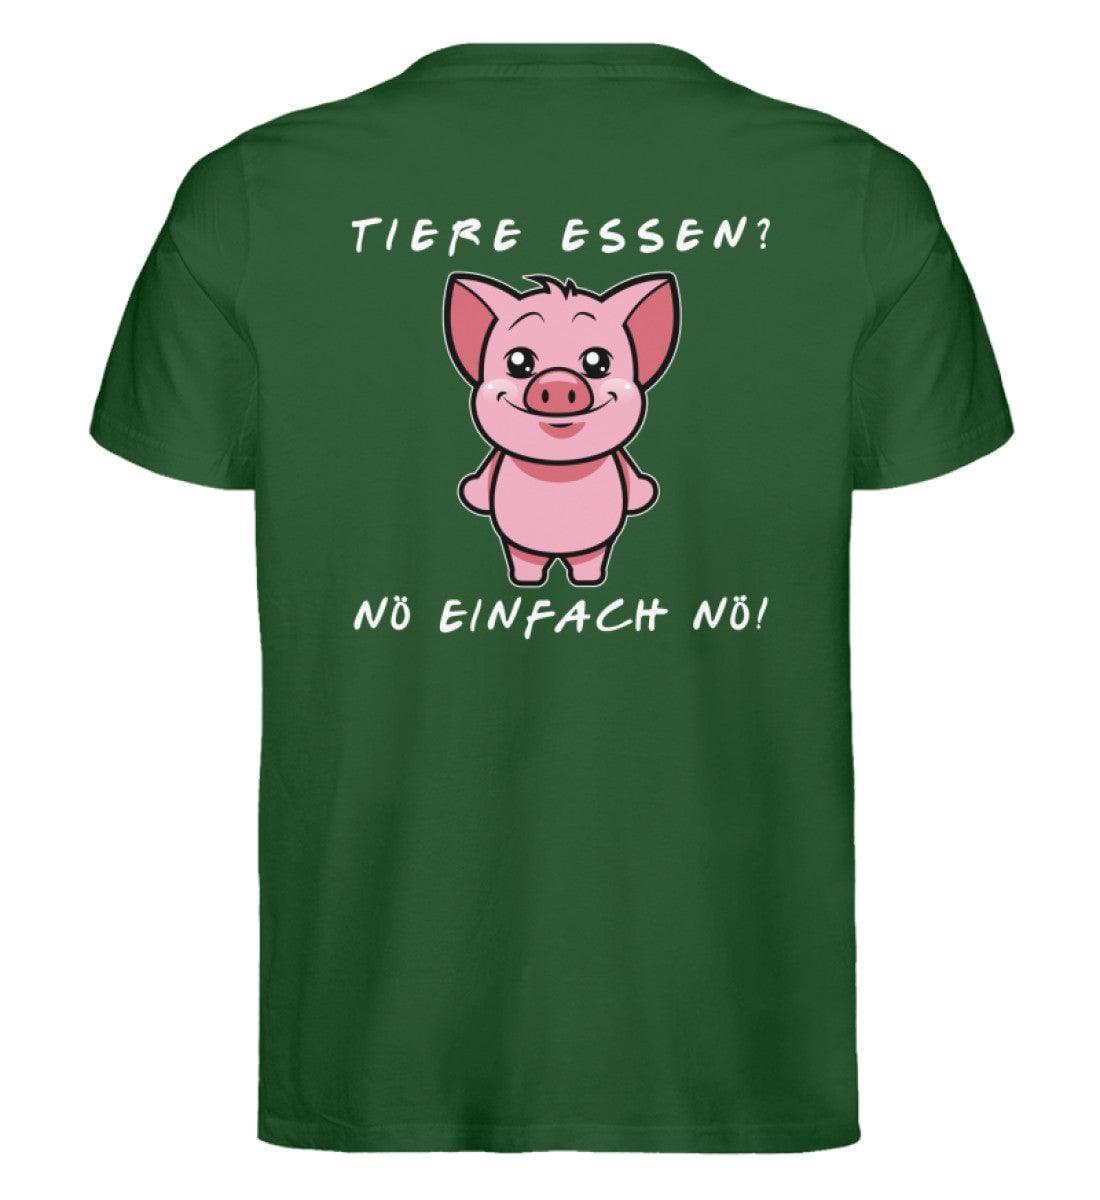 Nö einfach nö! - Pig - Unisex Organic Shirt Rocker T-Shirt ST/ST Shirtee Dunkelgrün S 